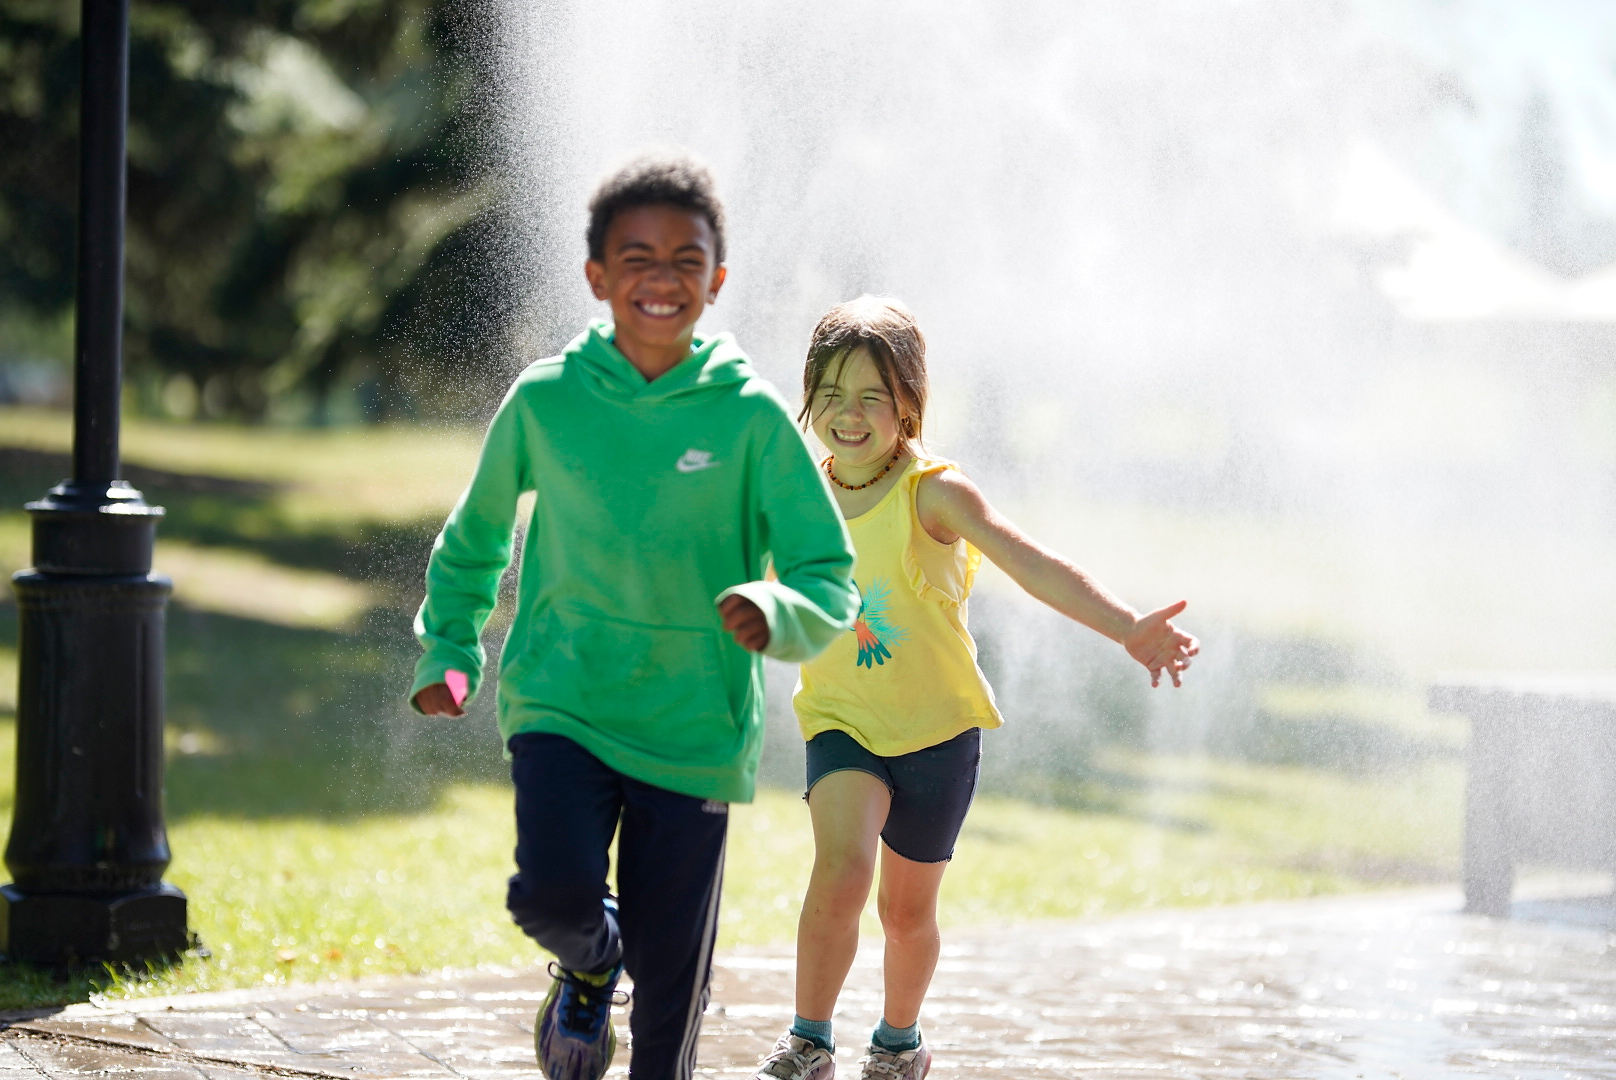 Kids Running in Sprinkler